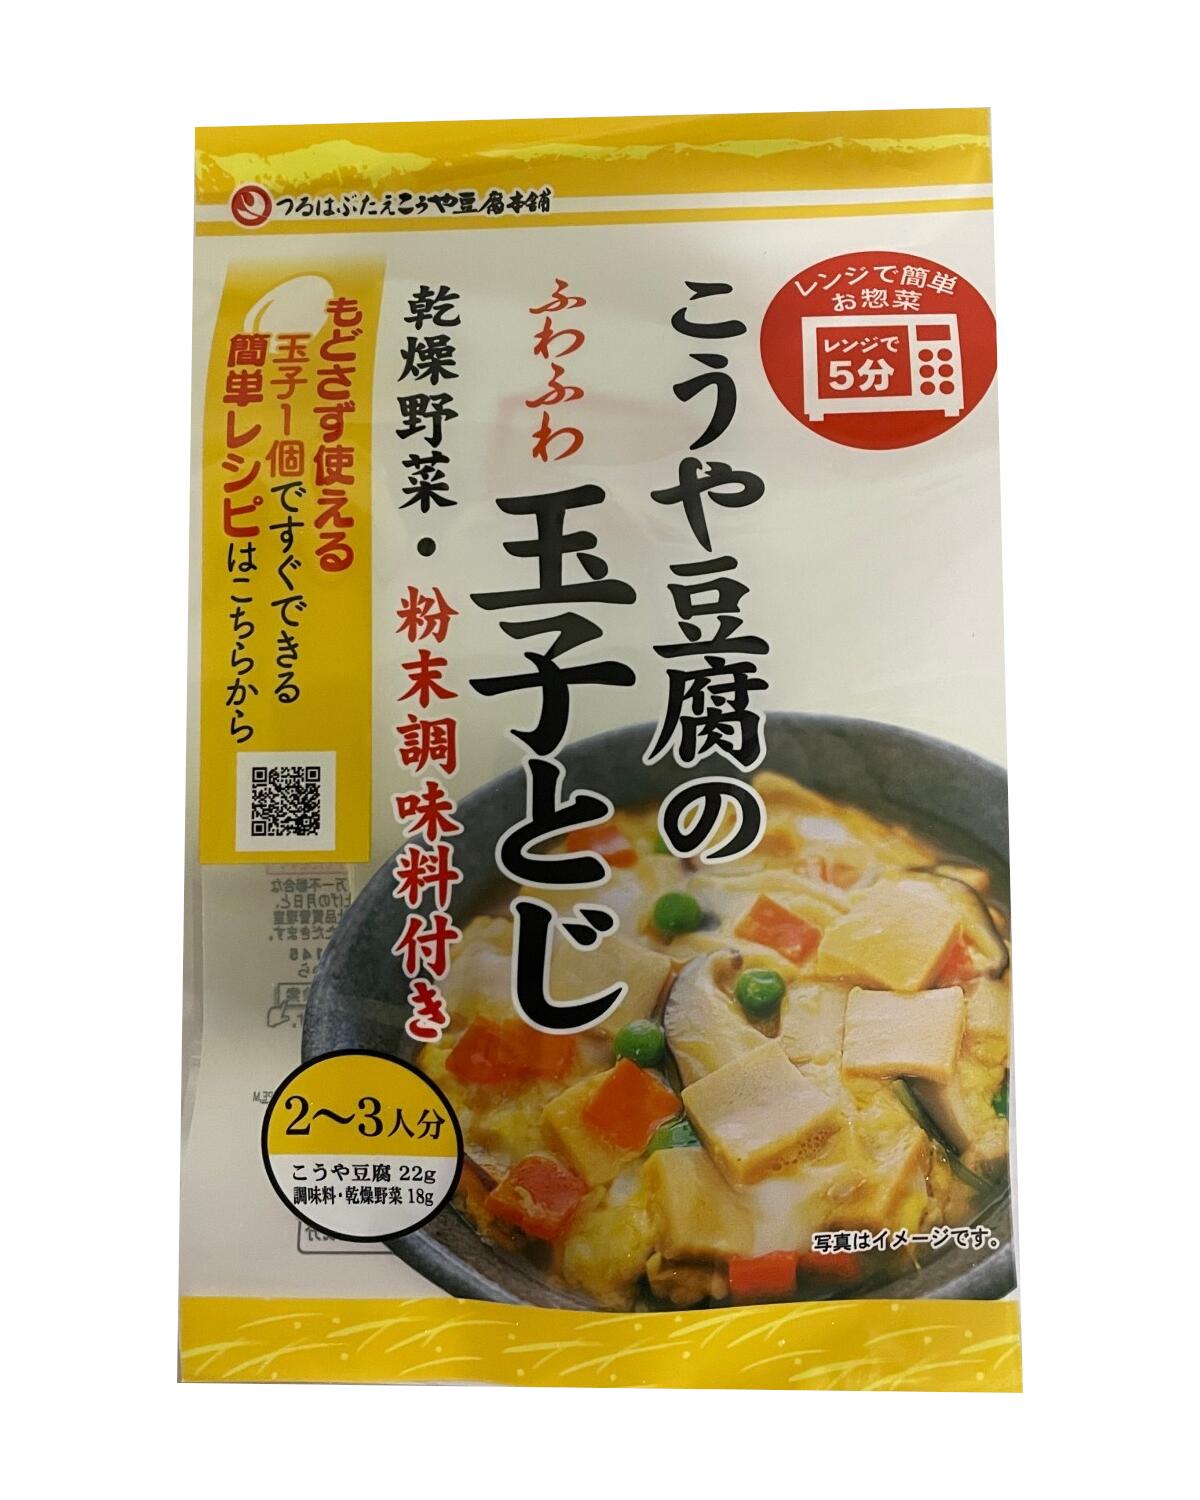 登喜和冷凍食品 玉子とじこうや豆腐 40g (高野豆腐) 北